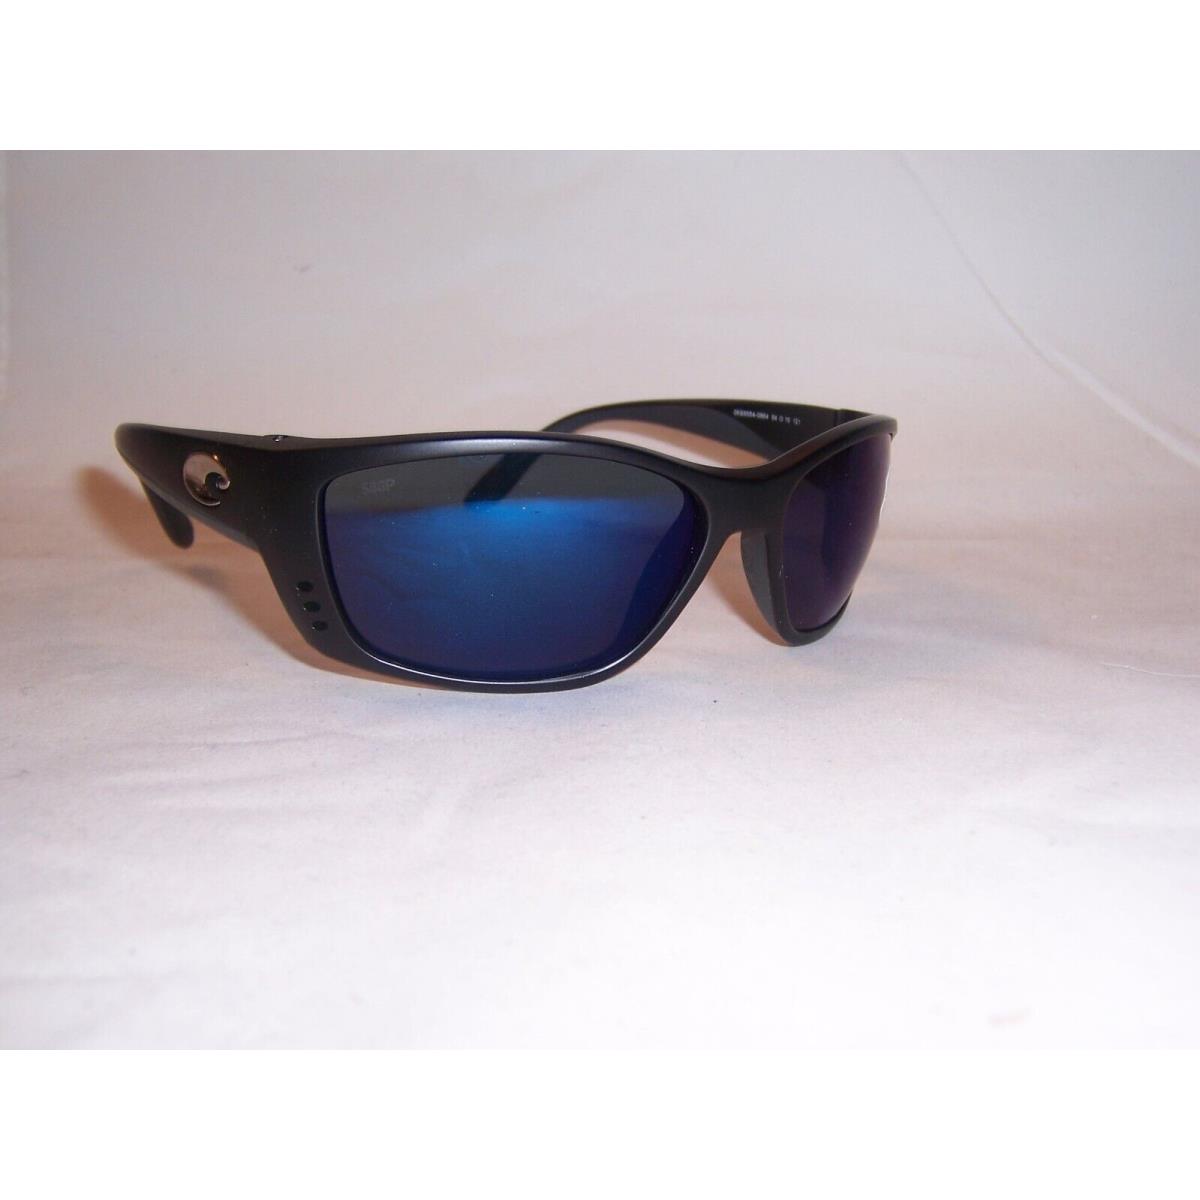 Costa Del Mar Fisch Sunglasses Black/blue Mirror 580P Polarized